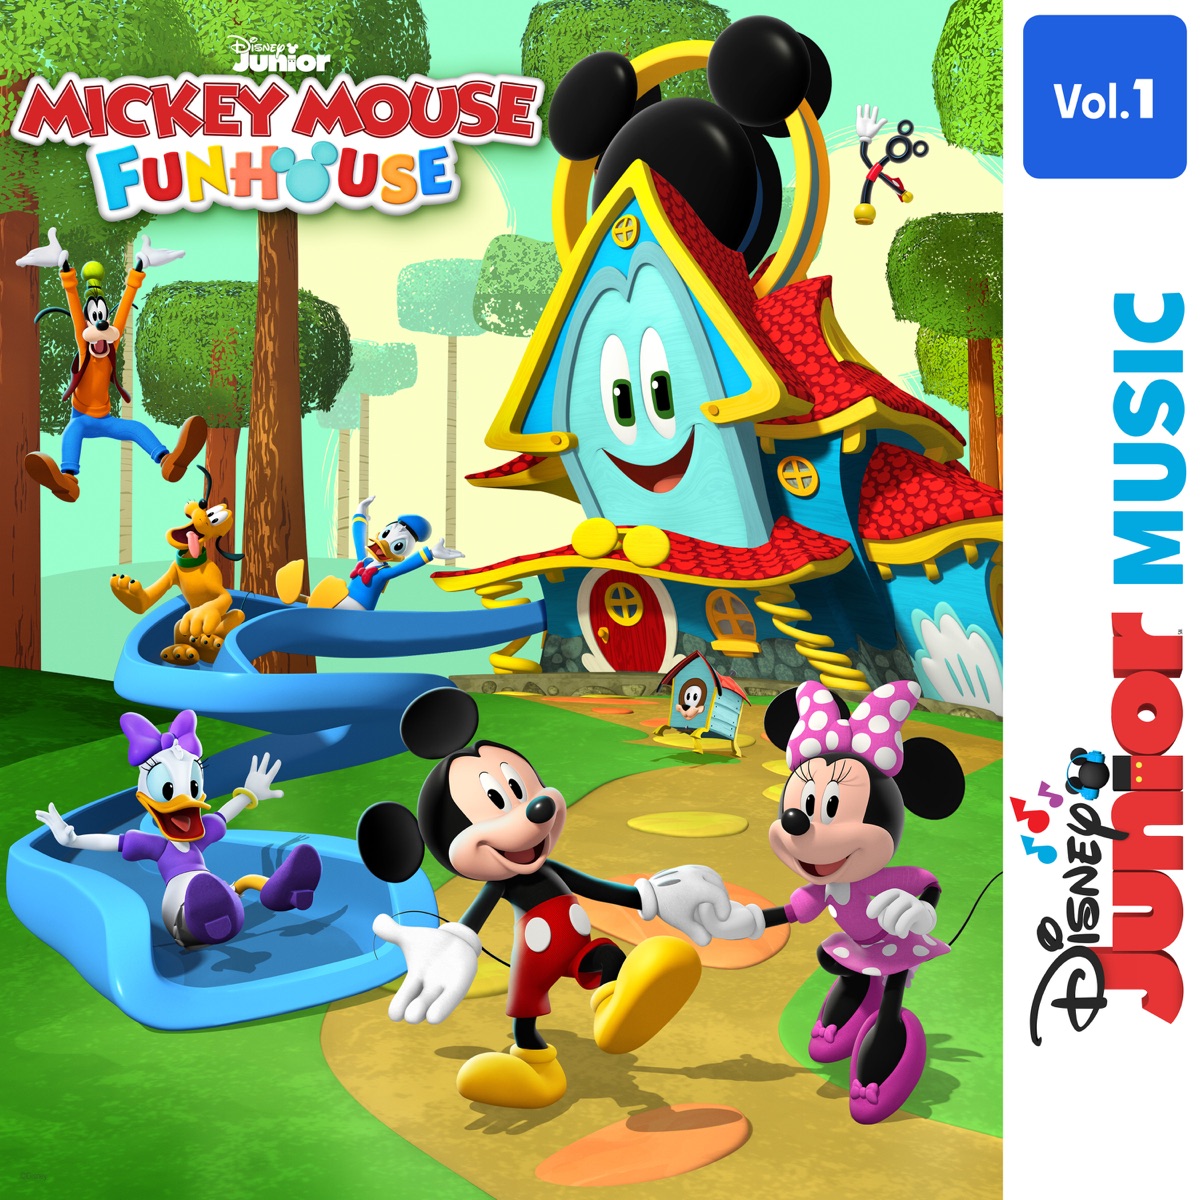 Disney Junior - Apple Music